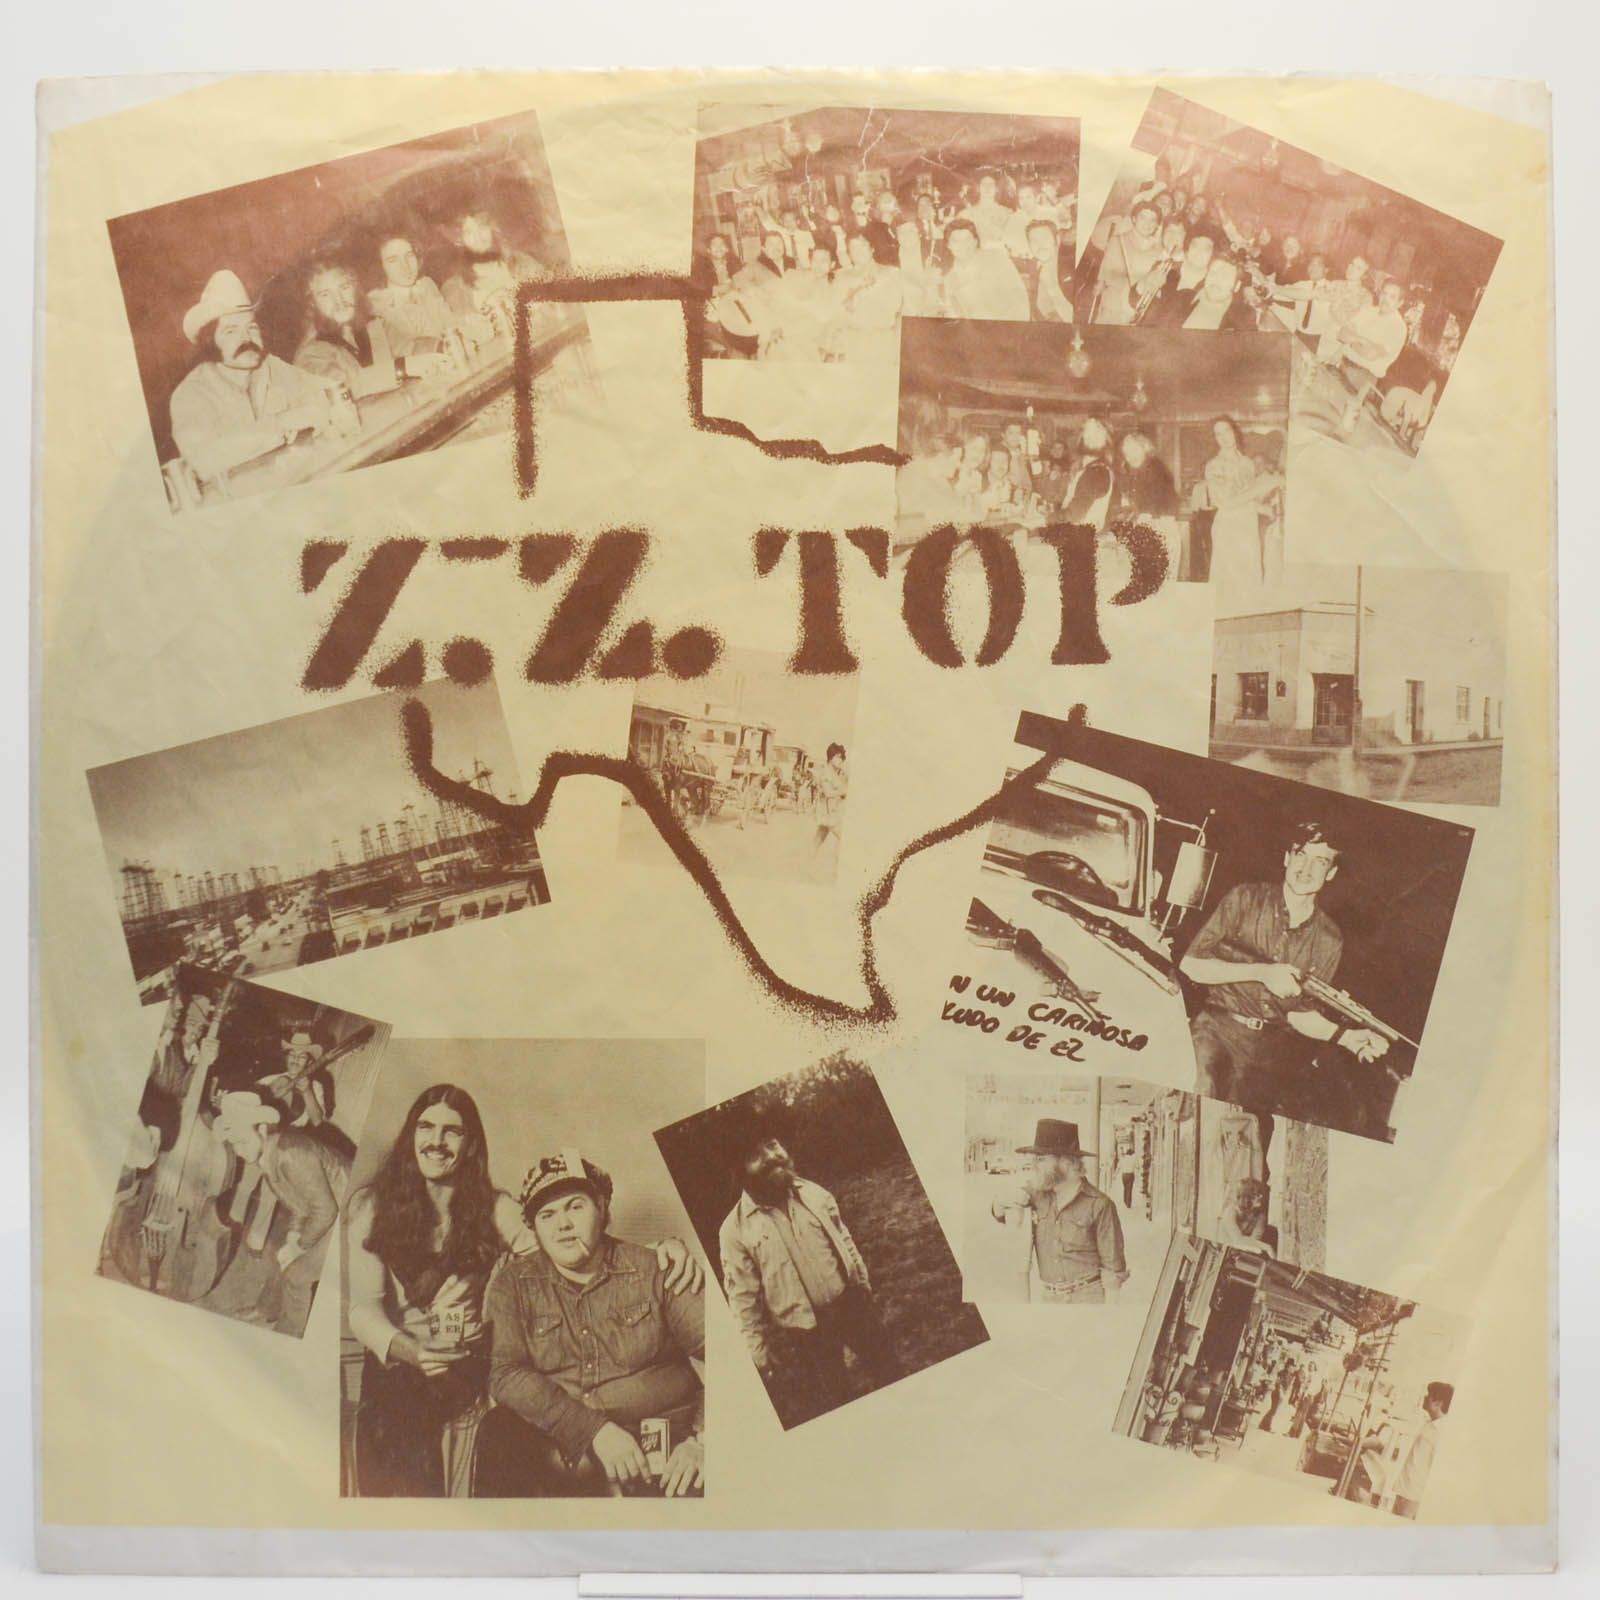 ZZ Top — Tres Hombres, 1973